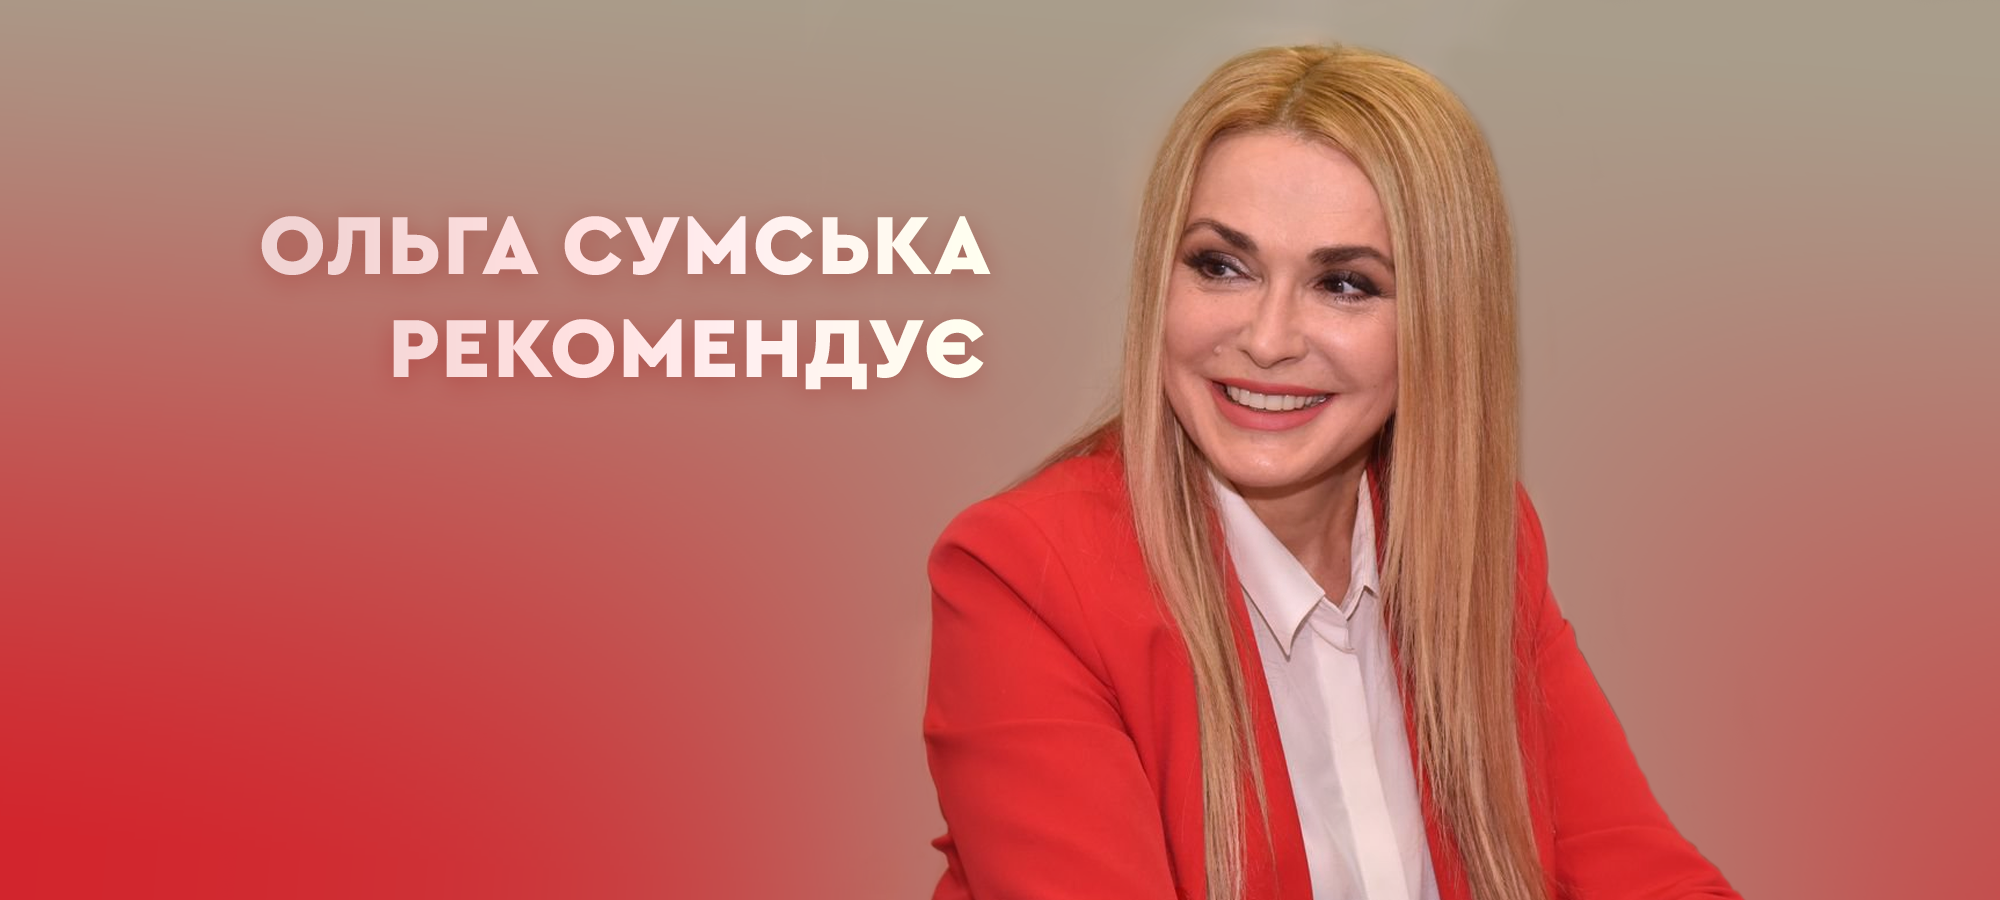 Ольга Сумська: «Булгаков мене молодить та надихає» 0